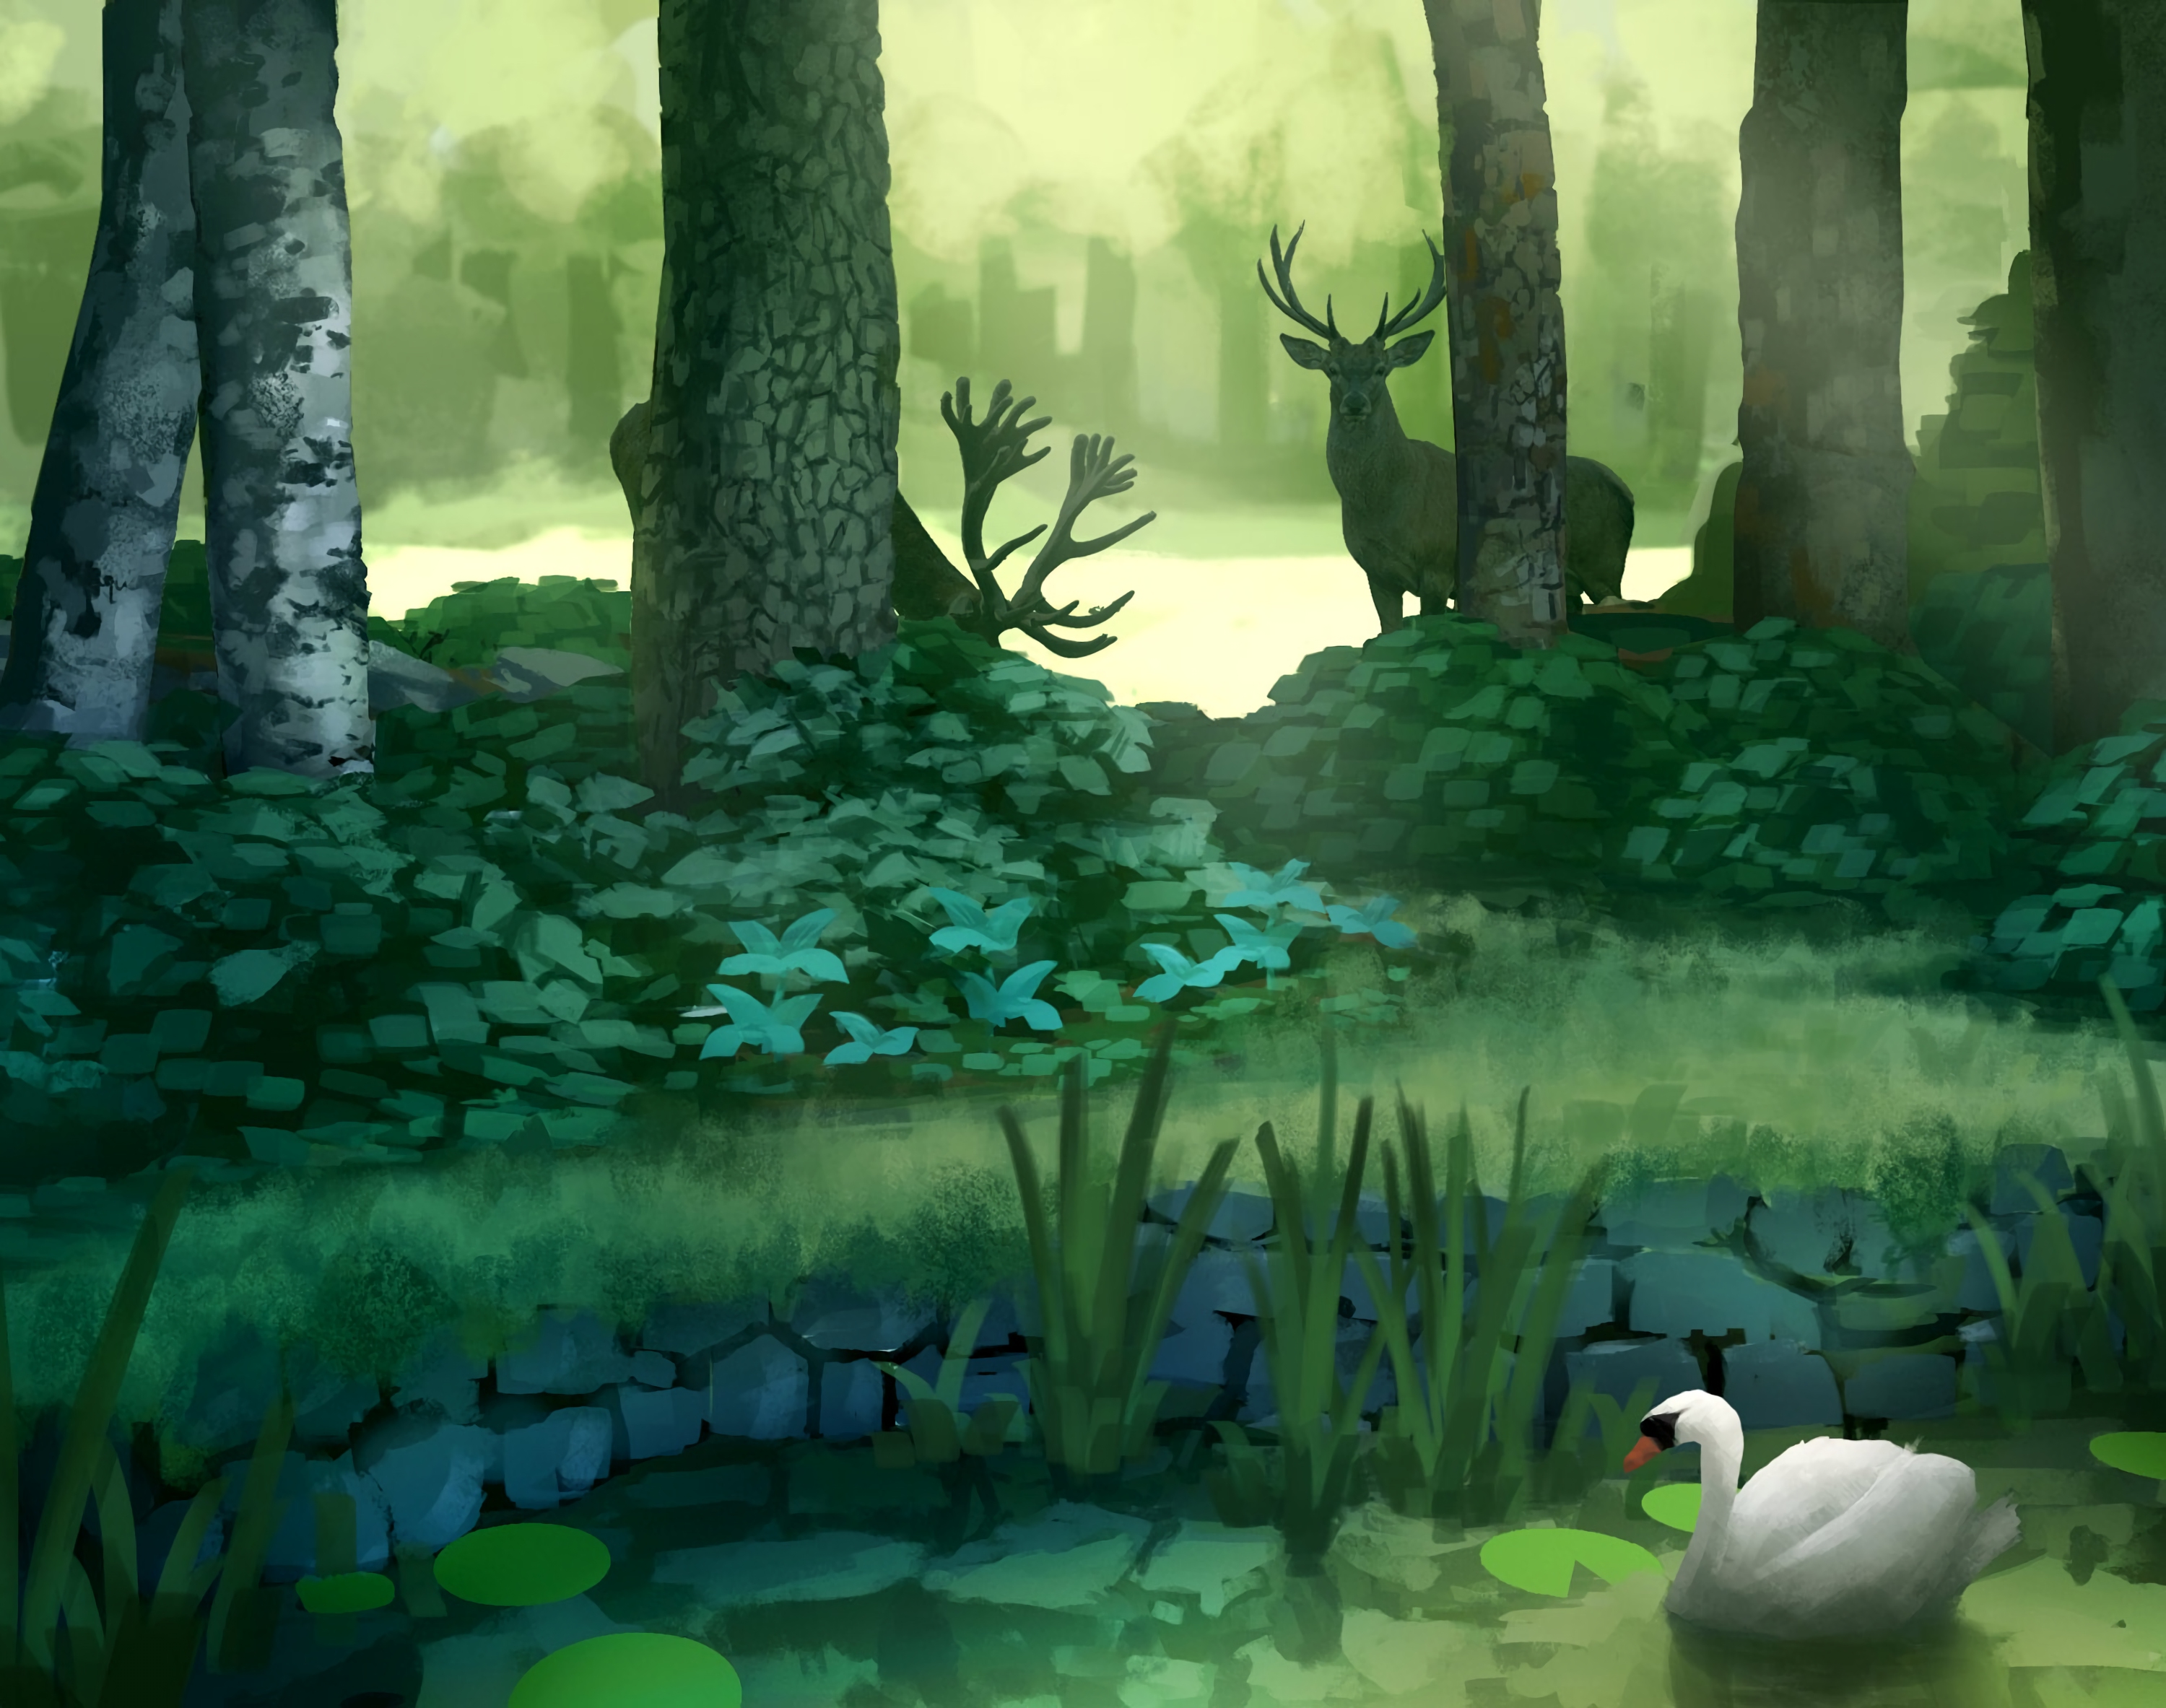 deers, trees, art, forest, swan, pond Image for desktop